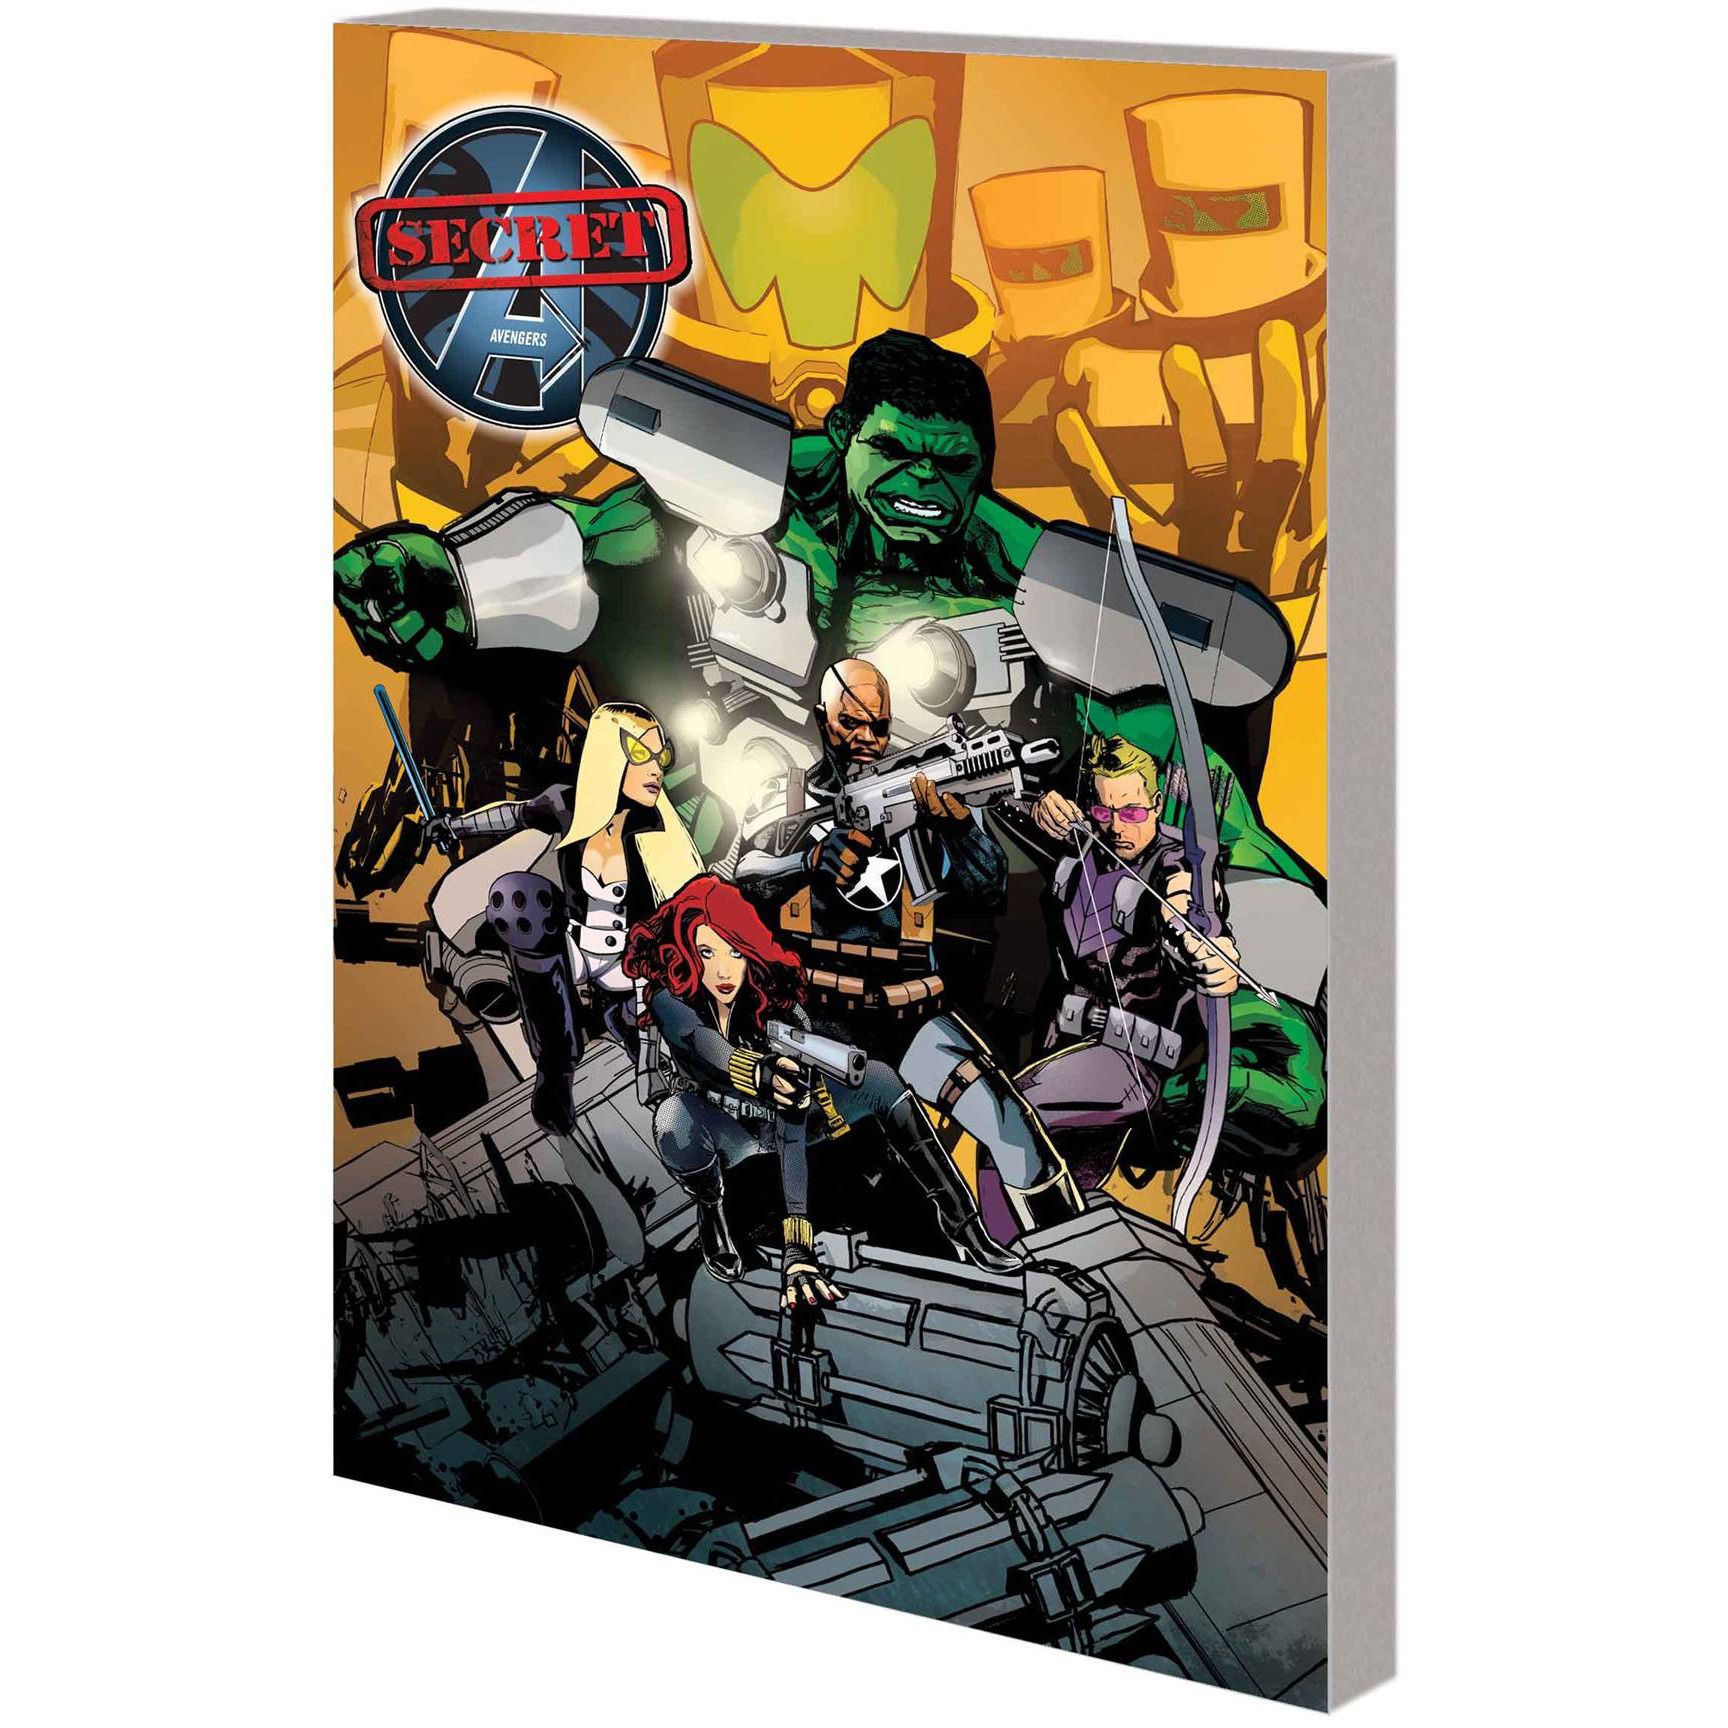  Secret Avengers TP VOL 02 Iliad Uncanny!